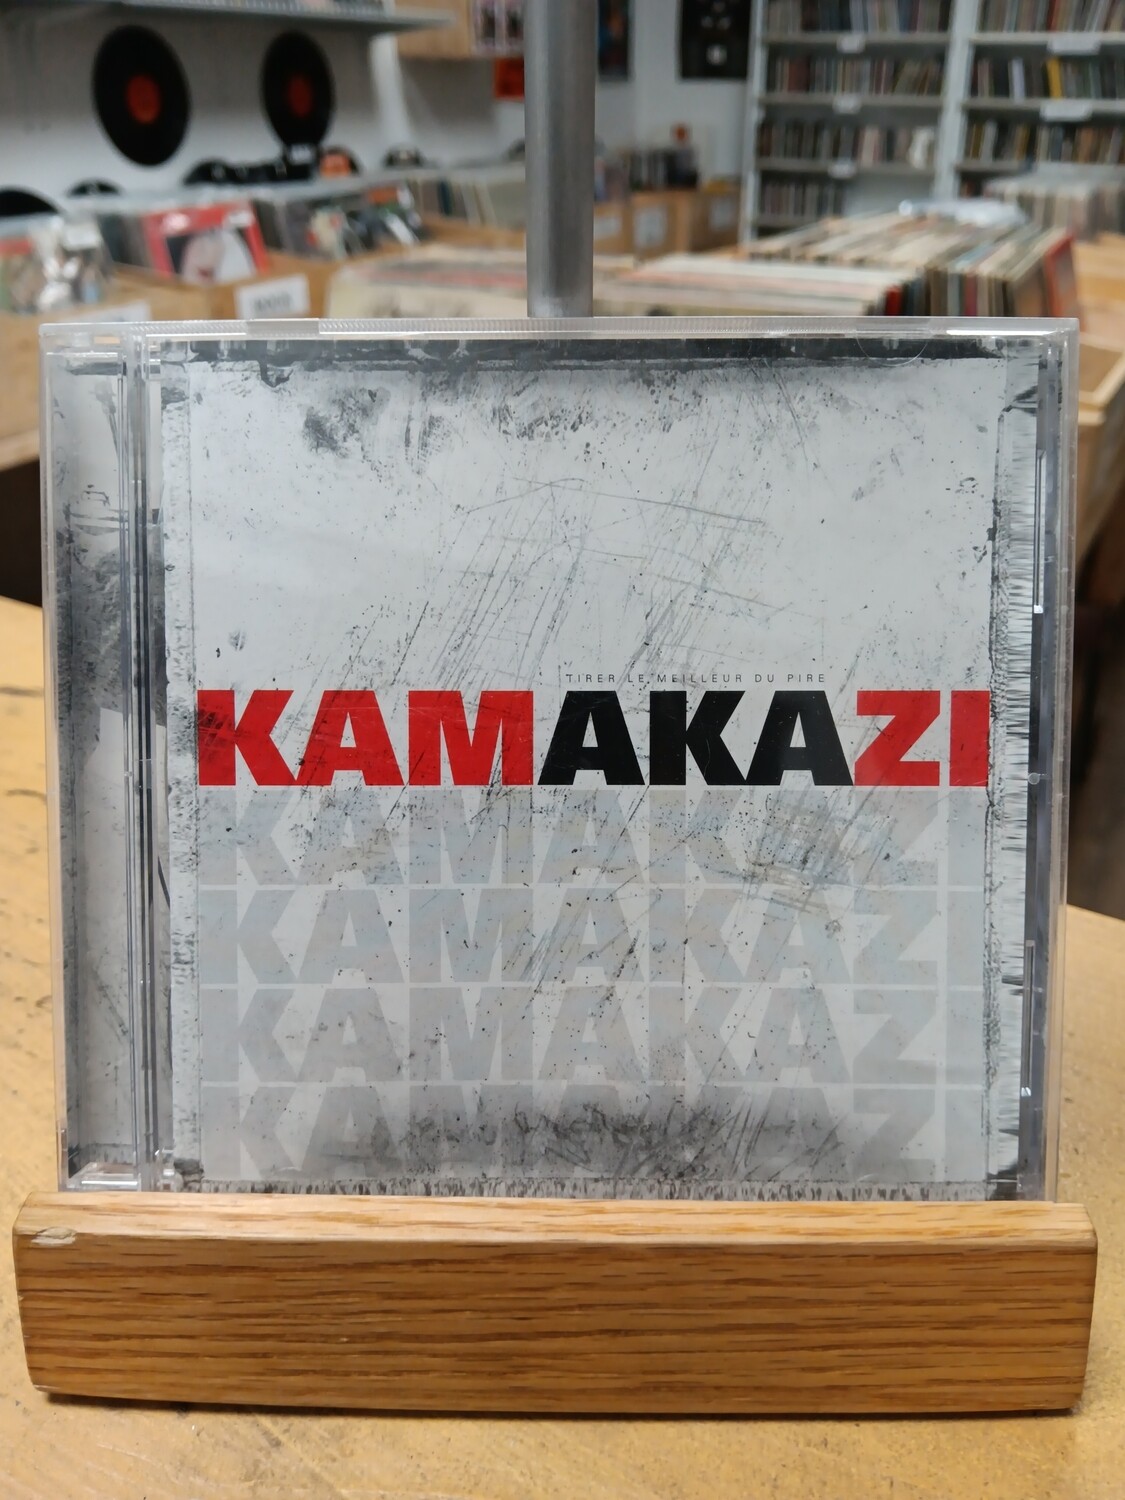 KAMAZAKI - Tirer le meilleur du pire (CD)